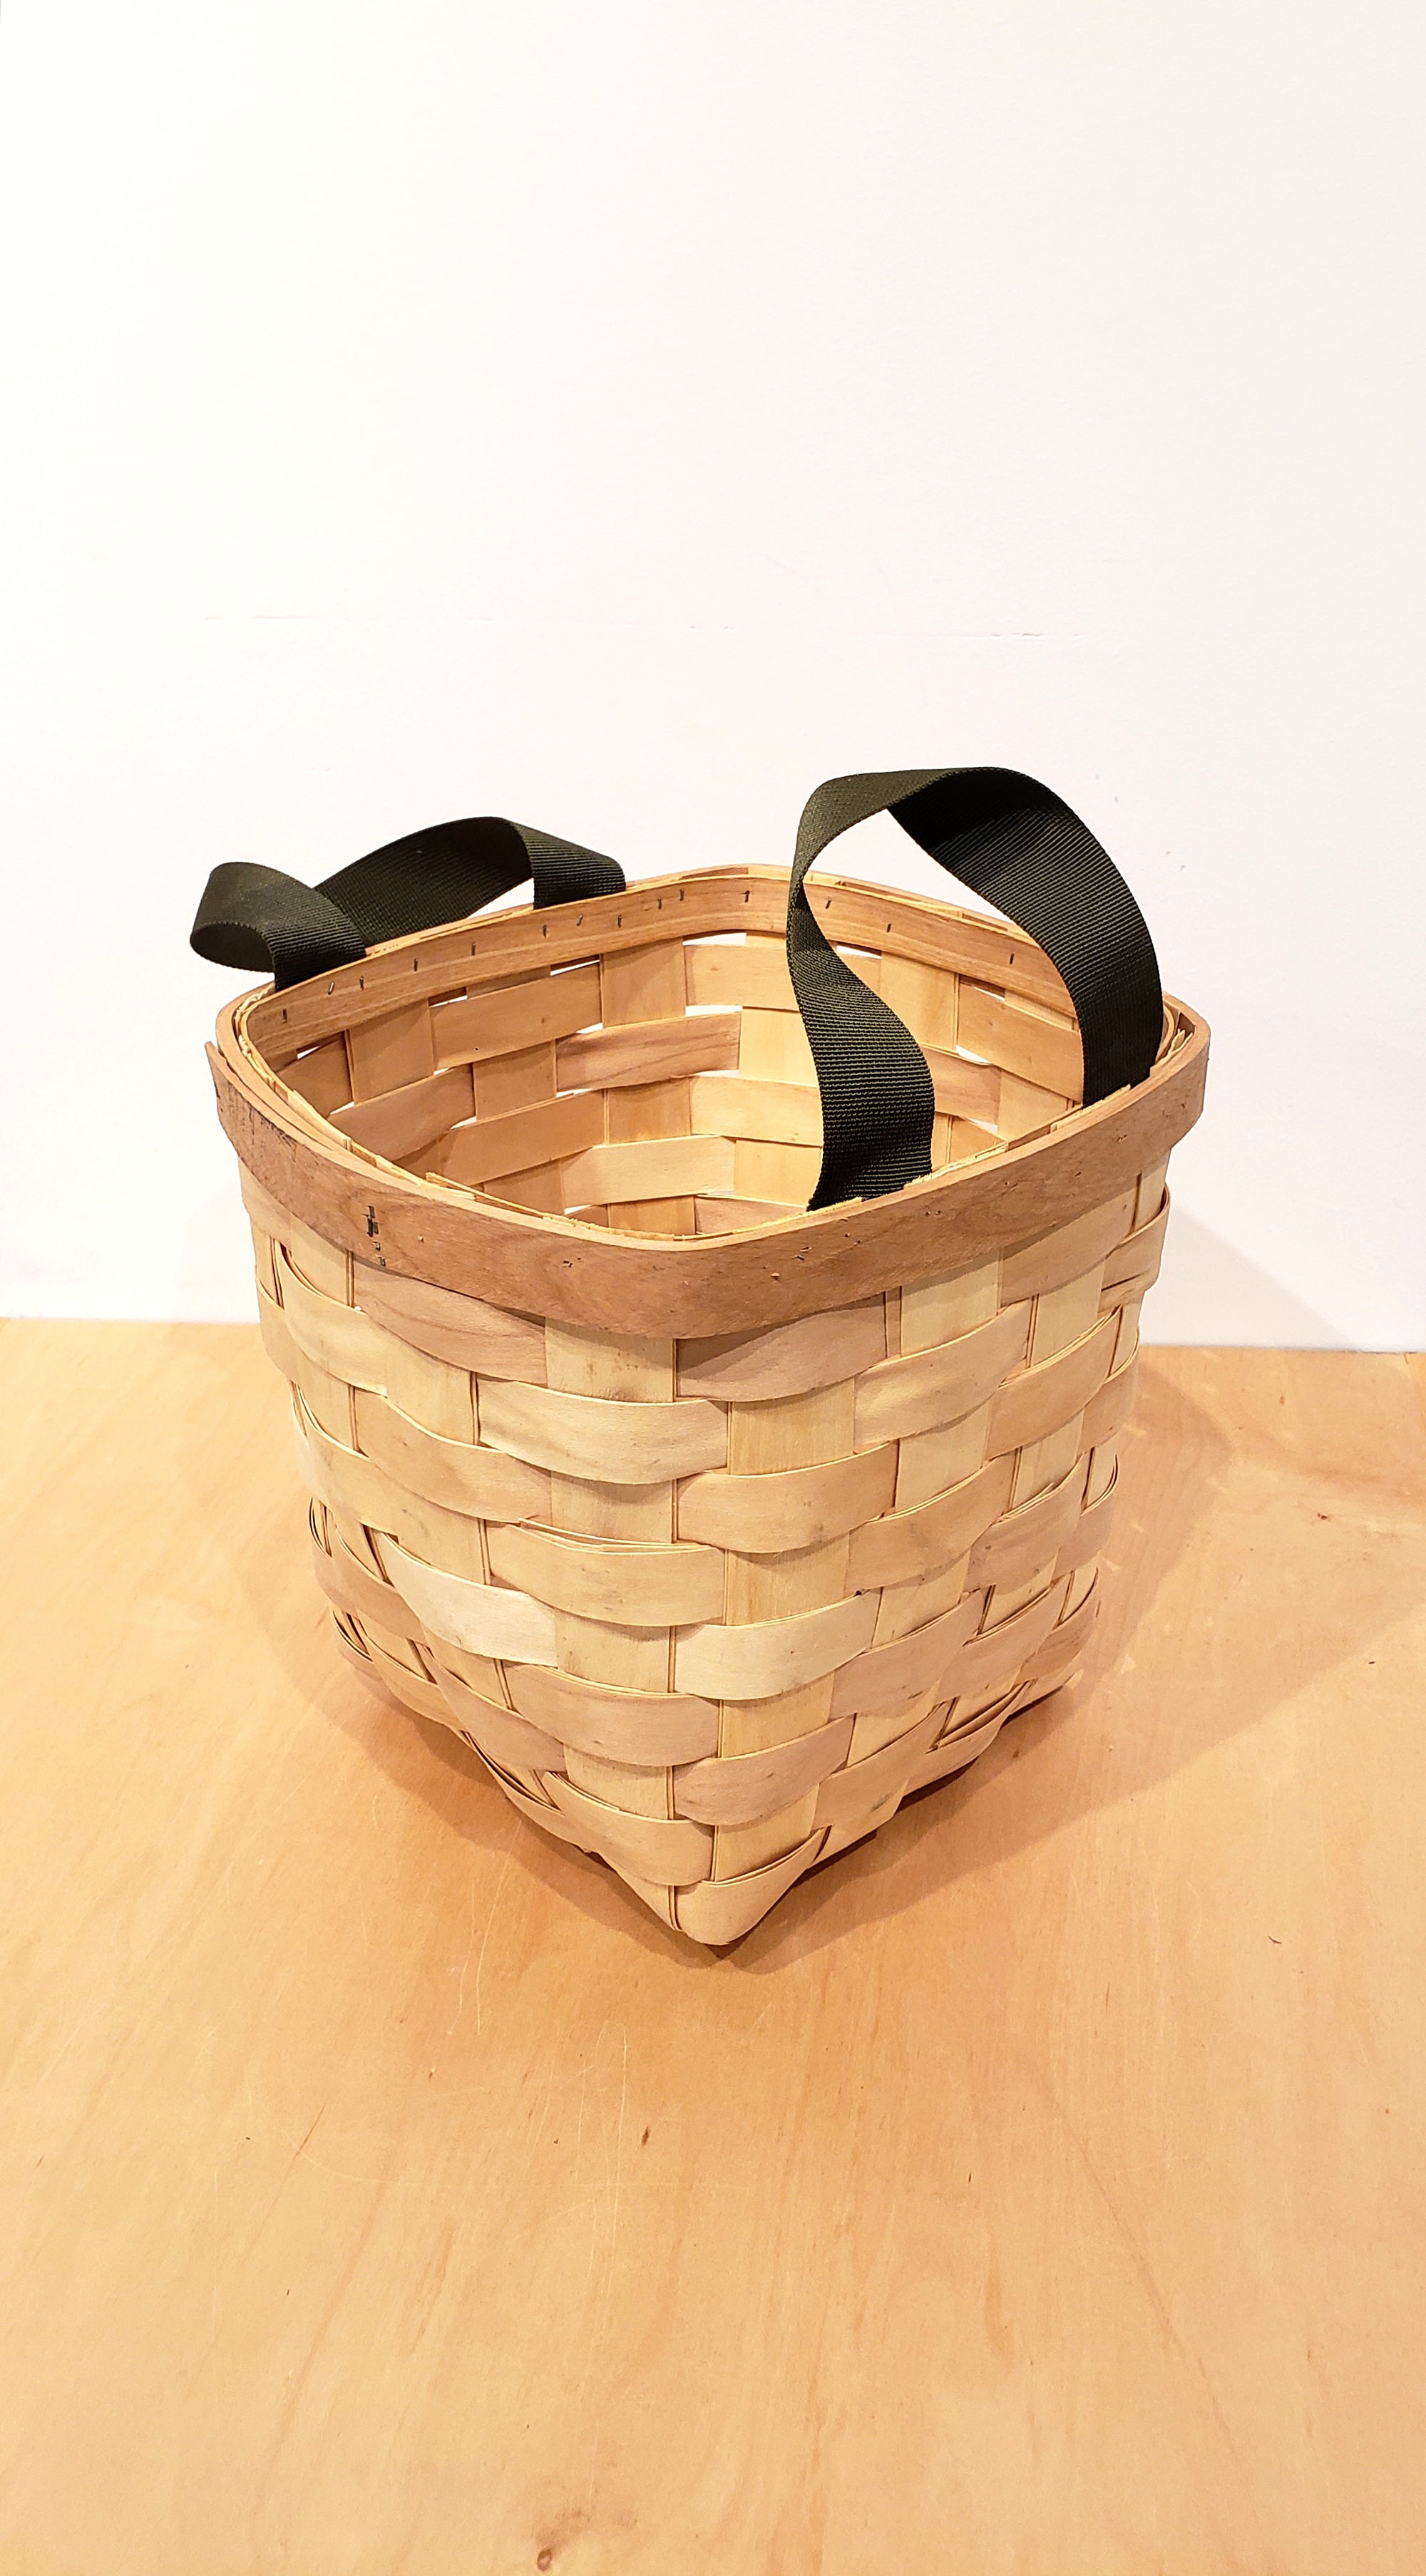 wooden basket